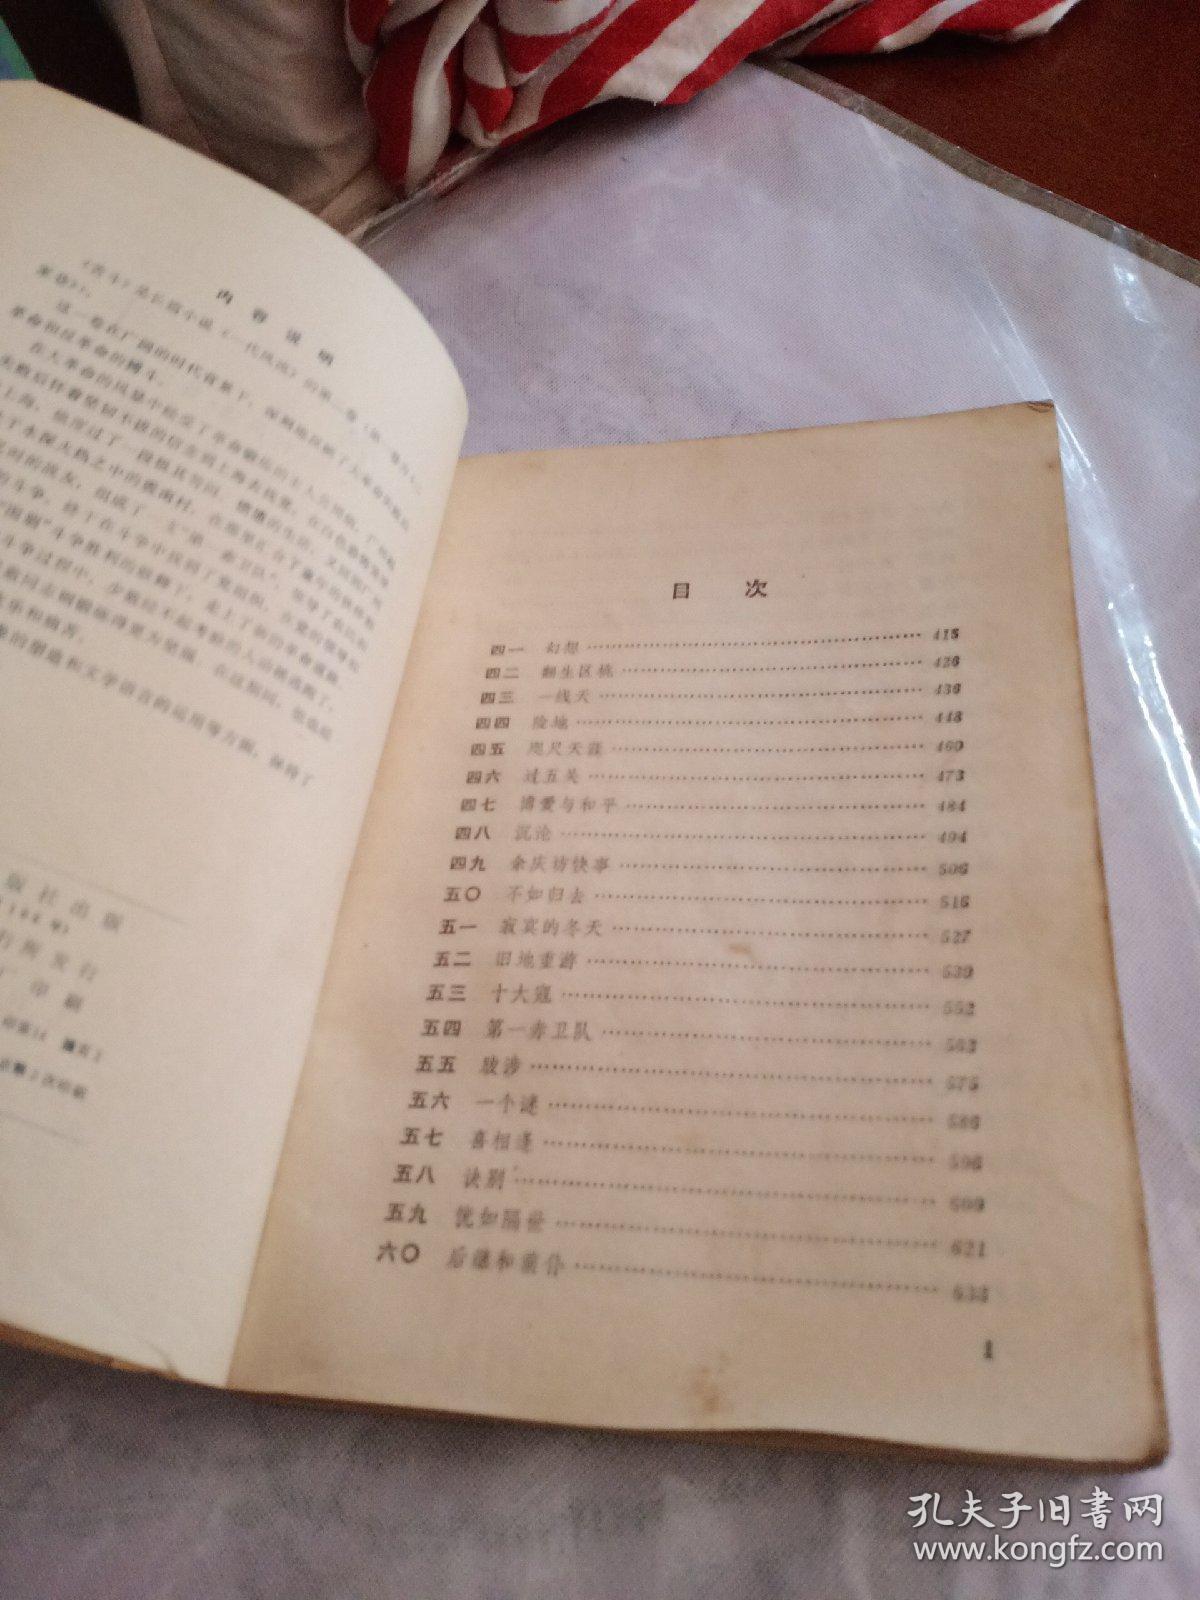 苦斗，一代风流，第二卷，欧阳山，1979年一版2印，北京，有锈渍点，有折痕，奇书少见，看图免争议。